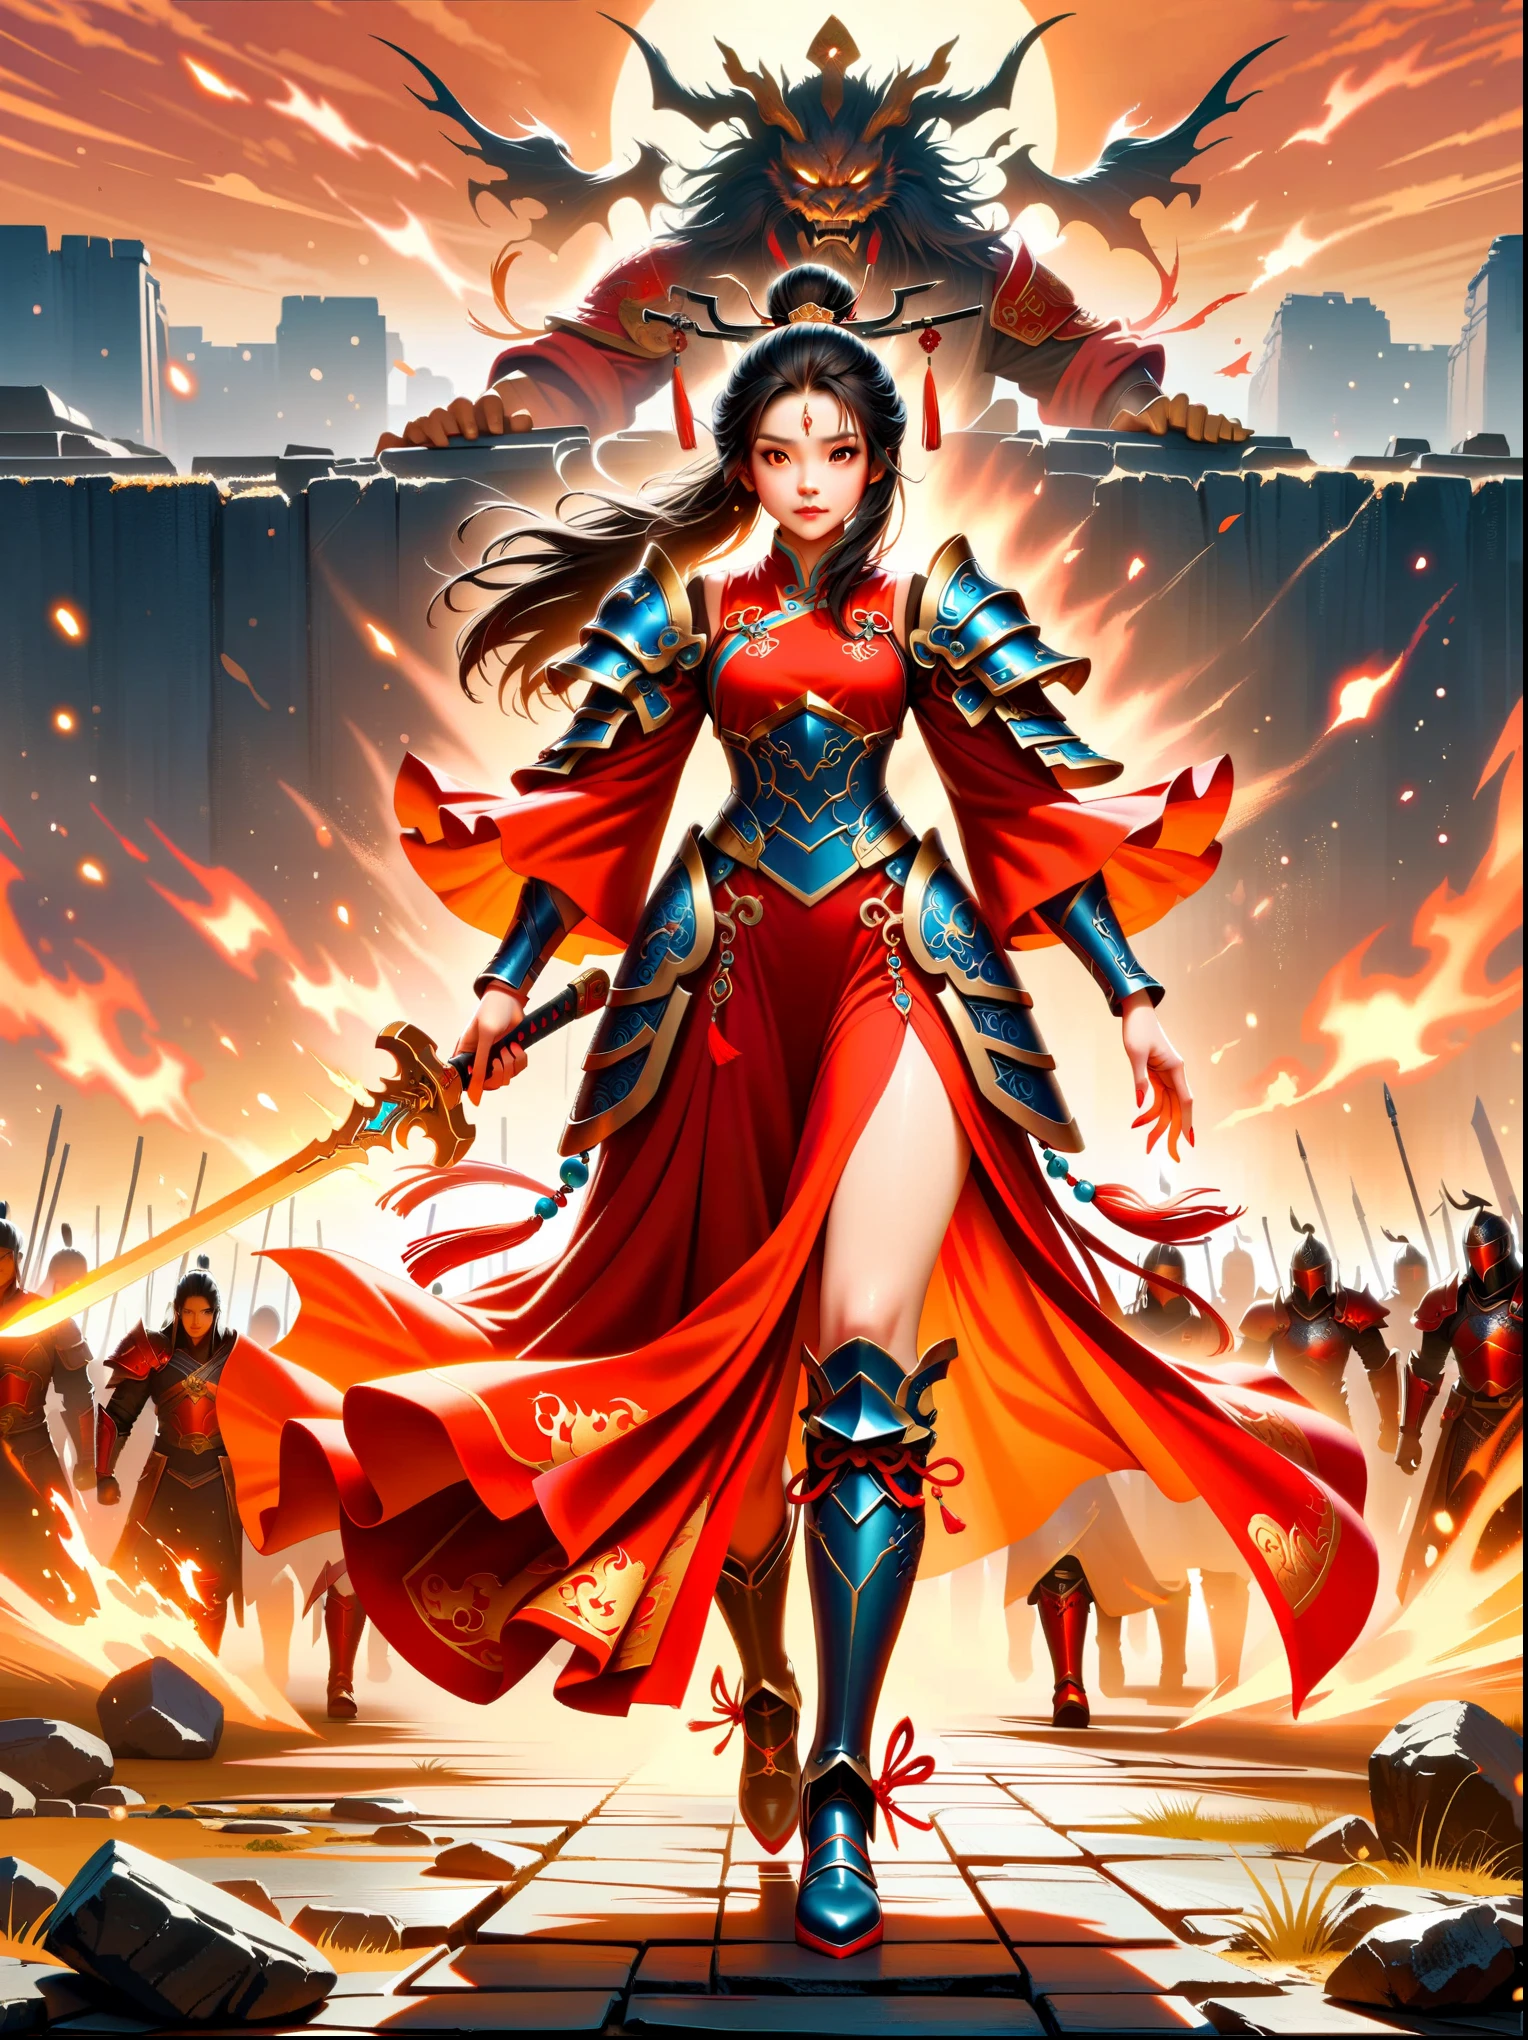 中国風, 古代の戦場, 古代中国の女性将軍, 手に剣を持っている, 厳しい表情, 全身, 素晴らしい顔立ち, 赤いローブ, 鎧, ブーツ, 空の黄砂, 火の光, ゲームモデル, 素晴らしい照明, ocレンダリング, シネマティックエッジライト, 繊細な光, 非常に詳細な, 壮大な構成, スーパーHD, 最高品質, 傑作, 高品質, 4k